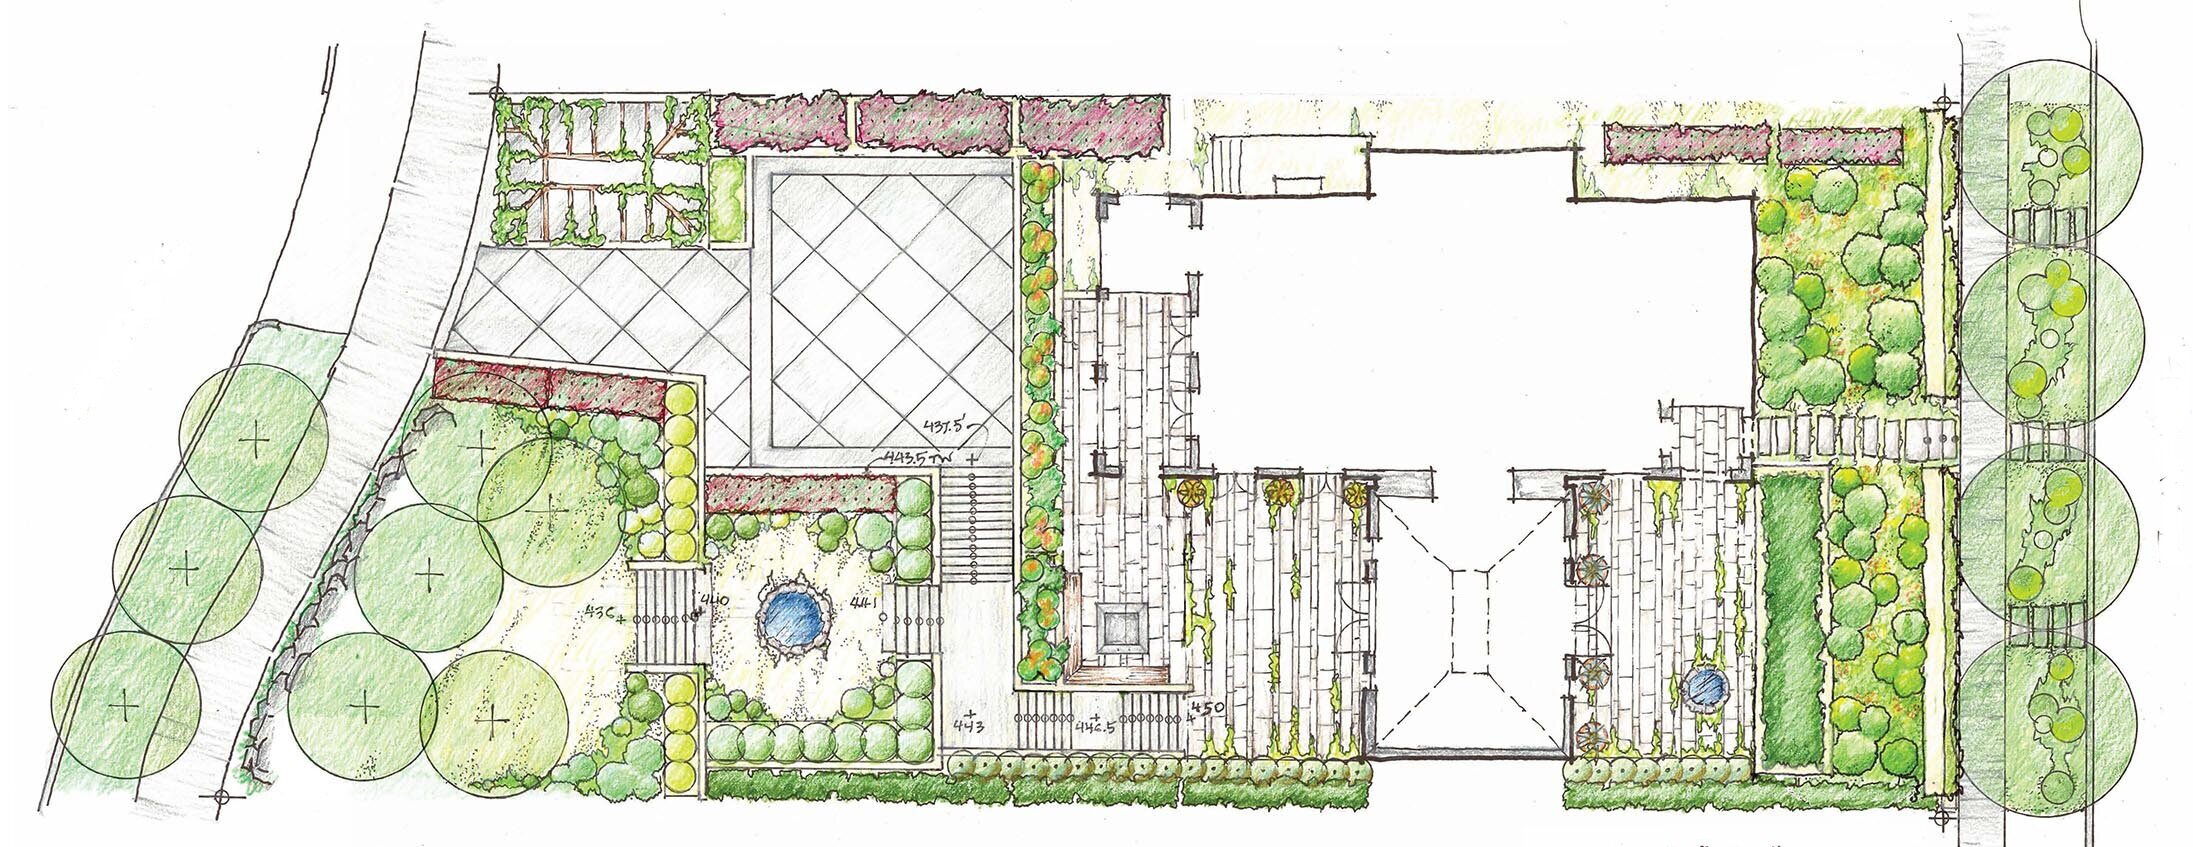 Schematic Plan of Volunteer Park Terrace Gardens